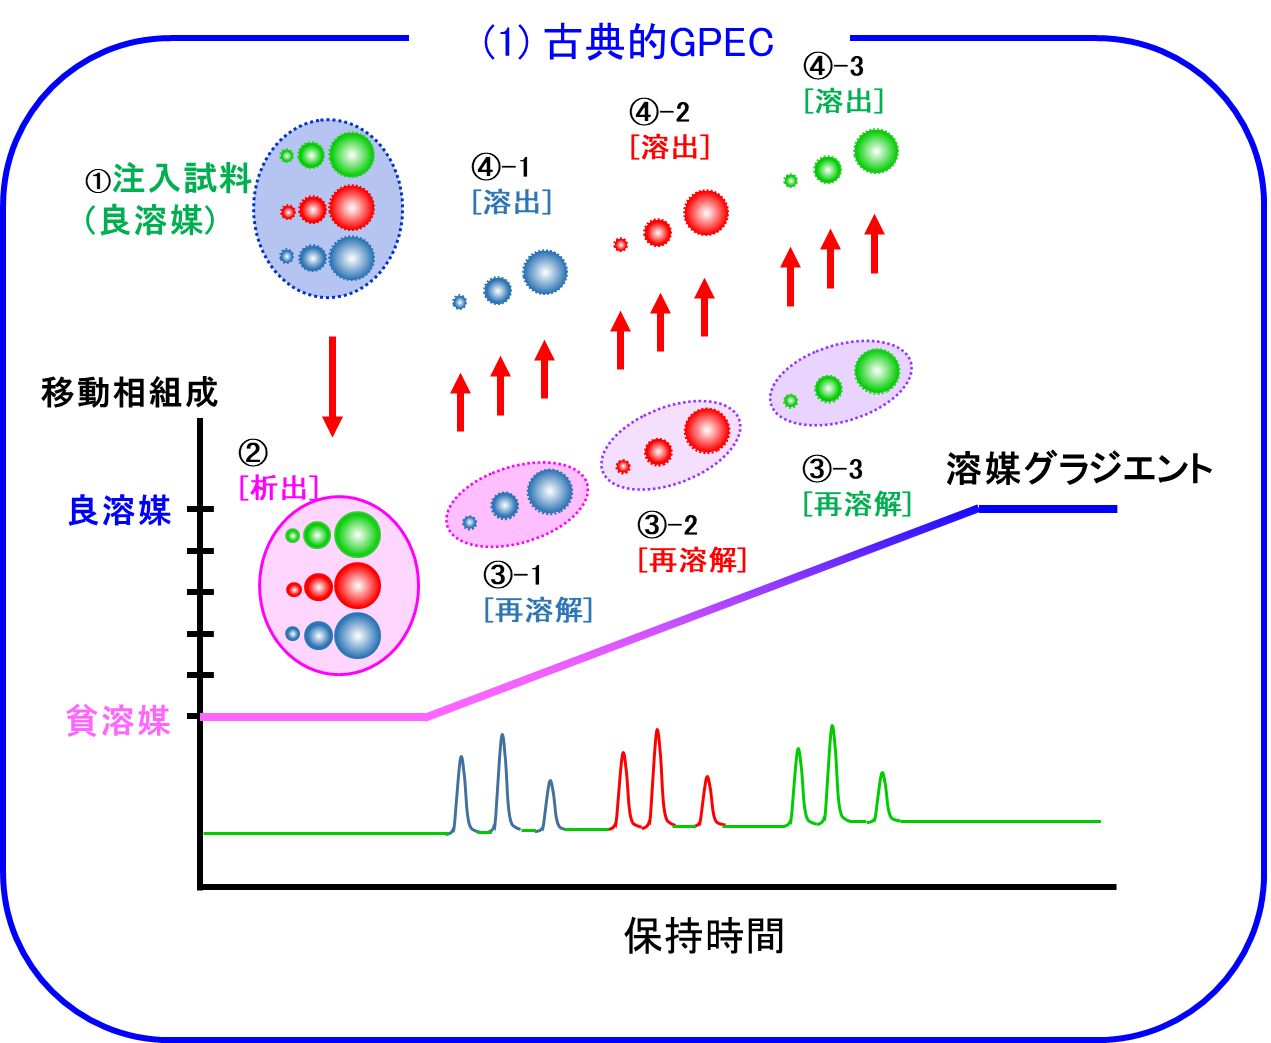 【図1】GPECの分離機構(1)：溶解度が主要因と考えたもの試料の色は組成の違いを、
球の大きさは分子量の違いを表します。
